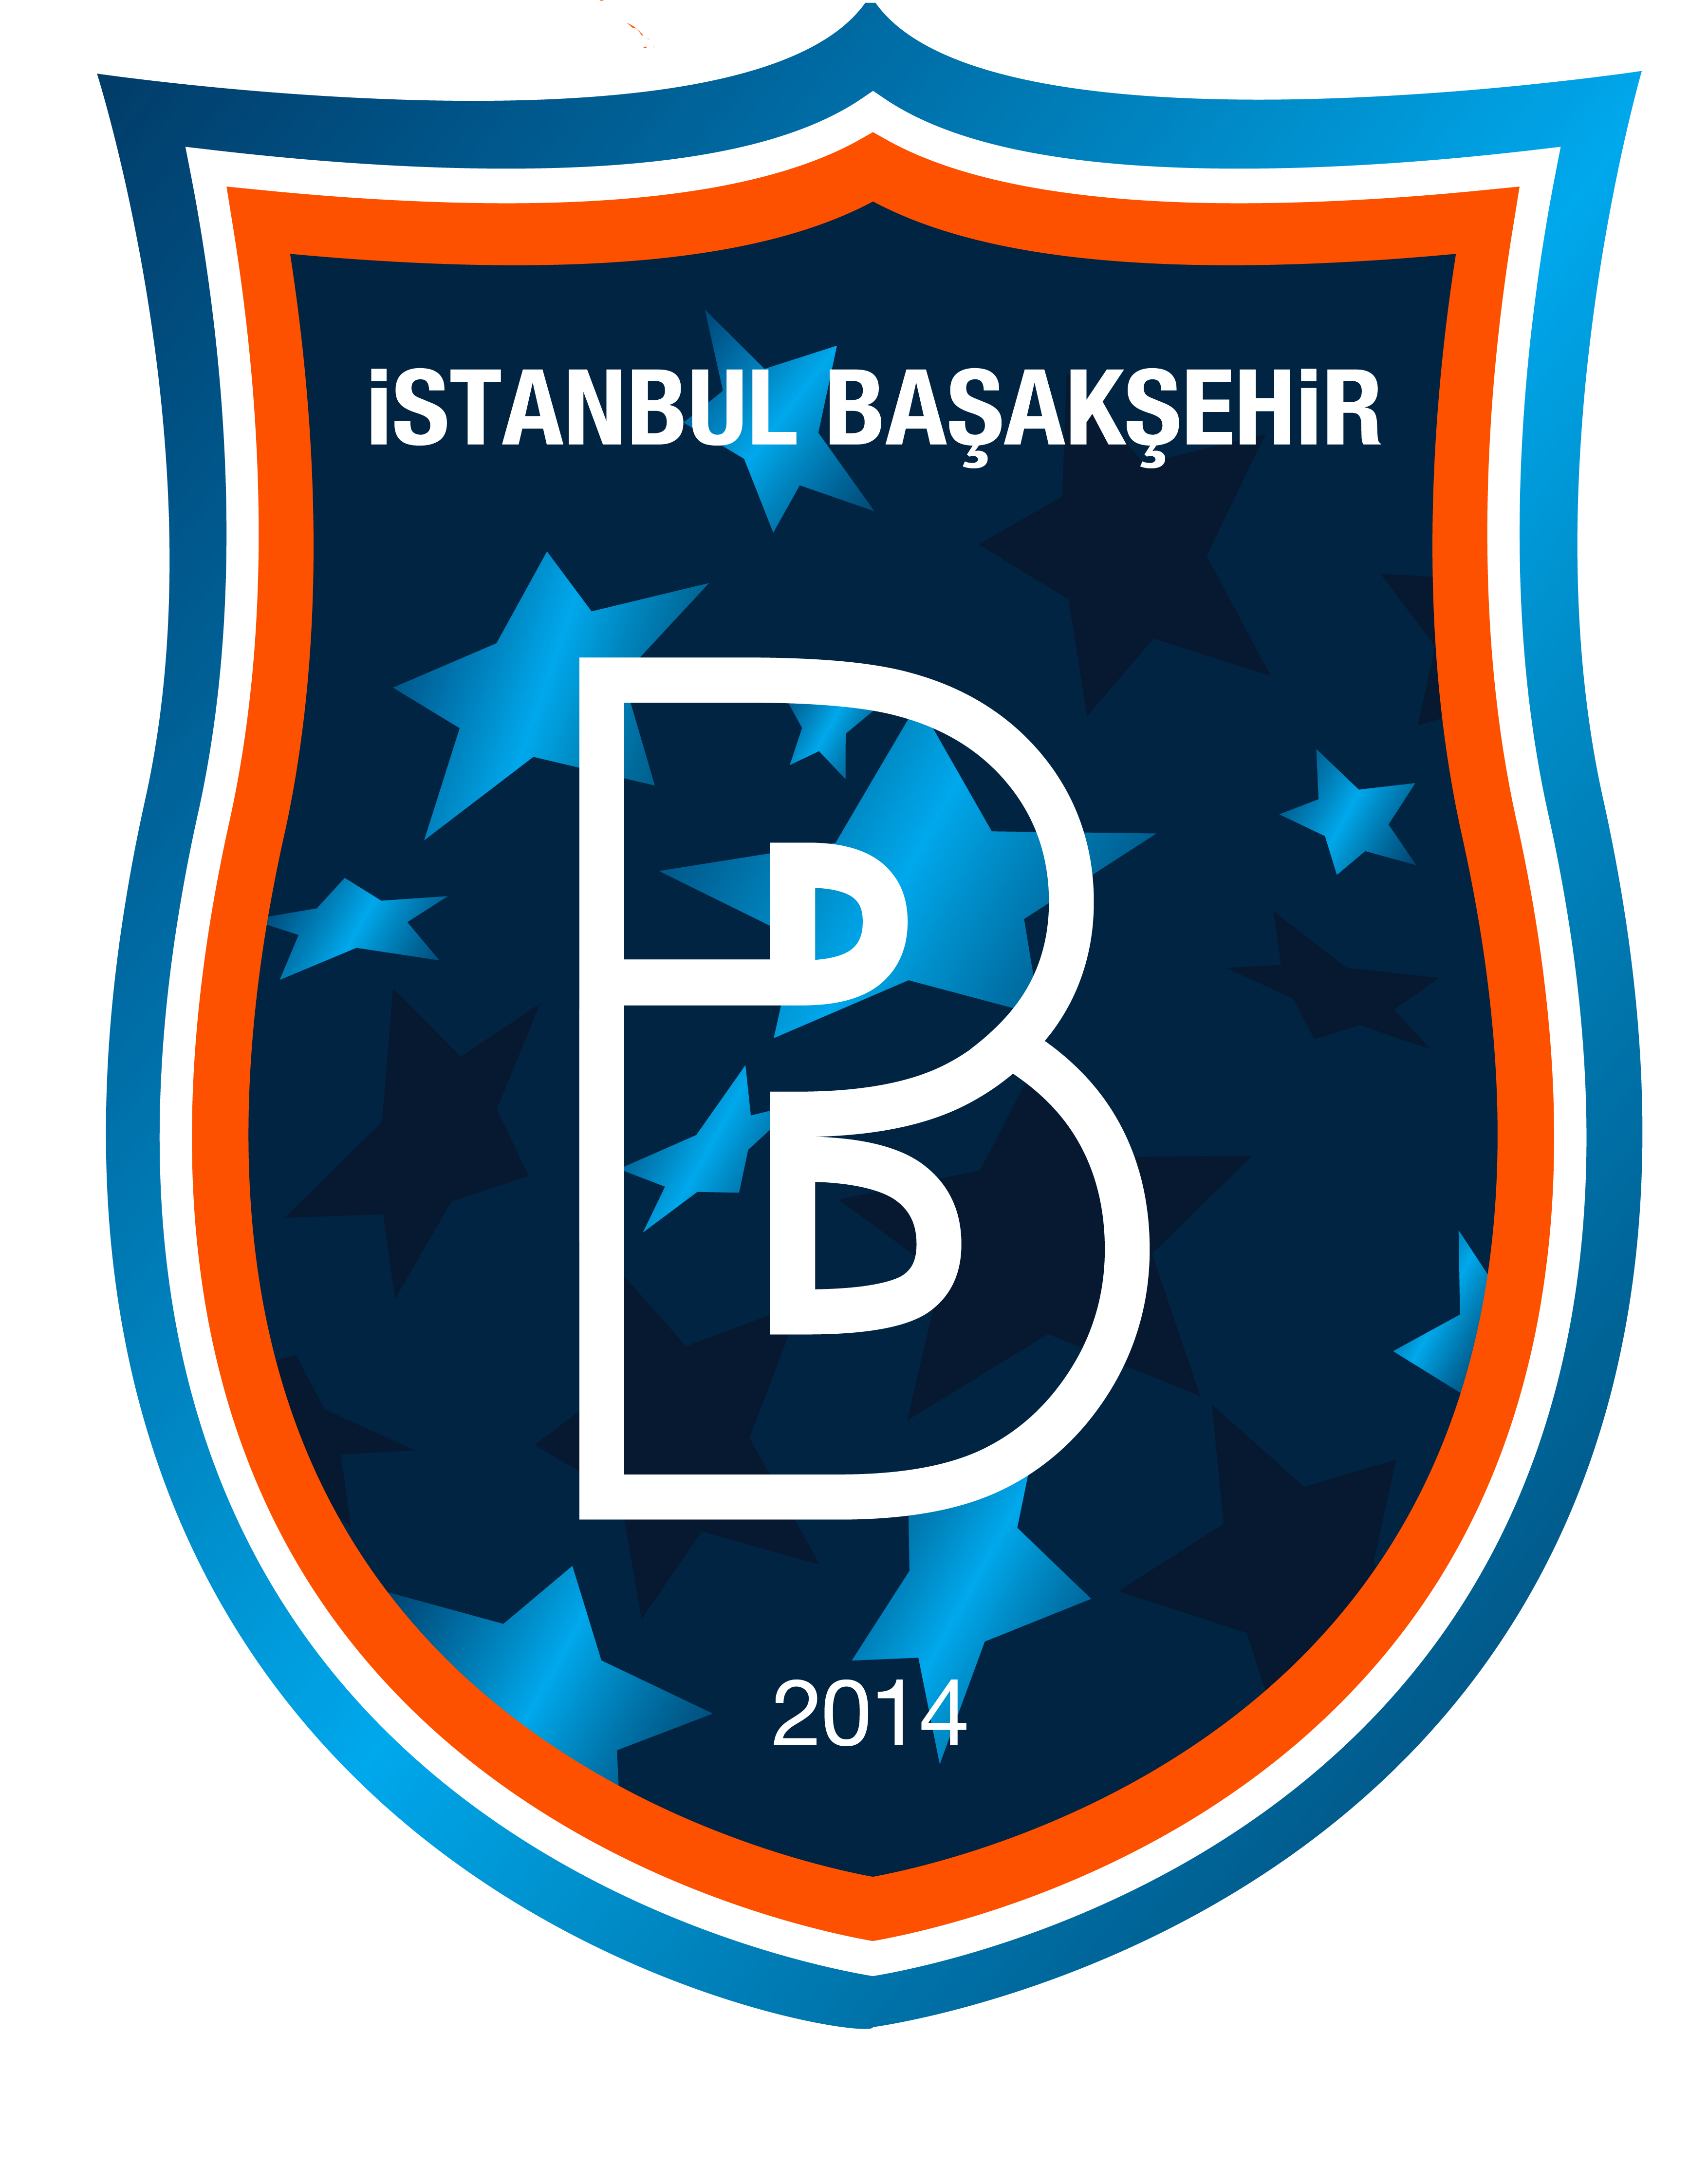 İstanbul Başakşehir Futbol Kulübü